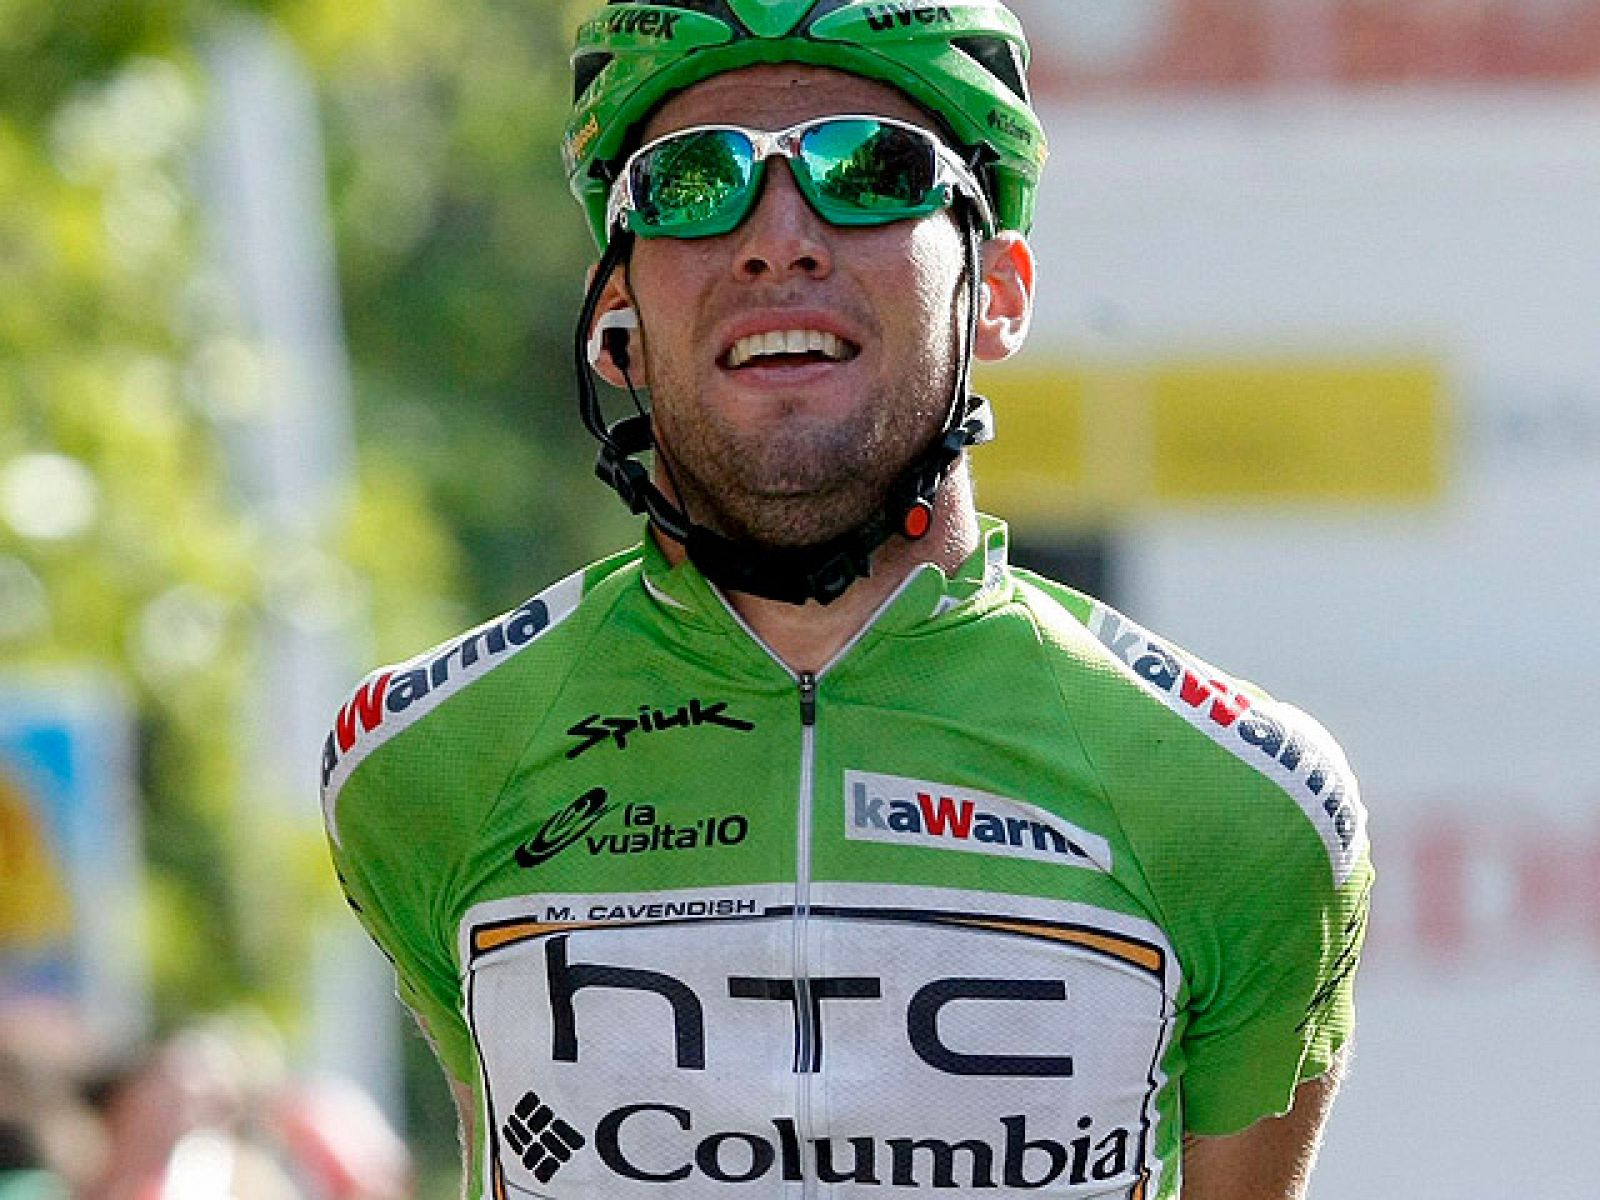 El británico Mark Cavendish, del Columbia, firmó su tercera victoria en la Vuelta tras imponerse con autoridad al esprint en la decimoctava etapa de la Vuelta disputada entre Valladolid y Salamanca, de 148,9 kilómetros, jornada de transición que le p